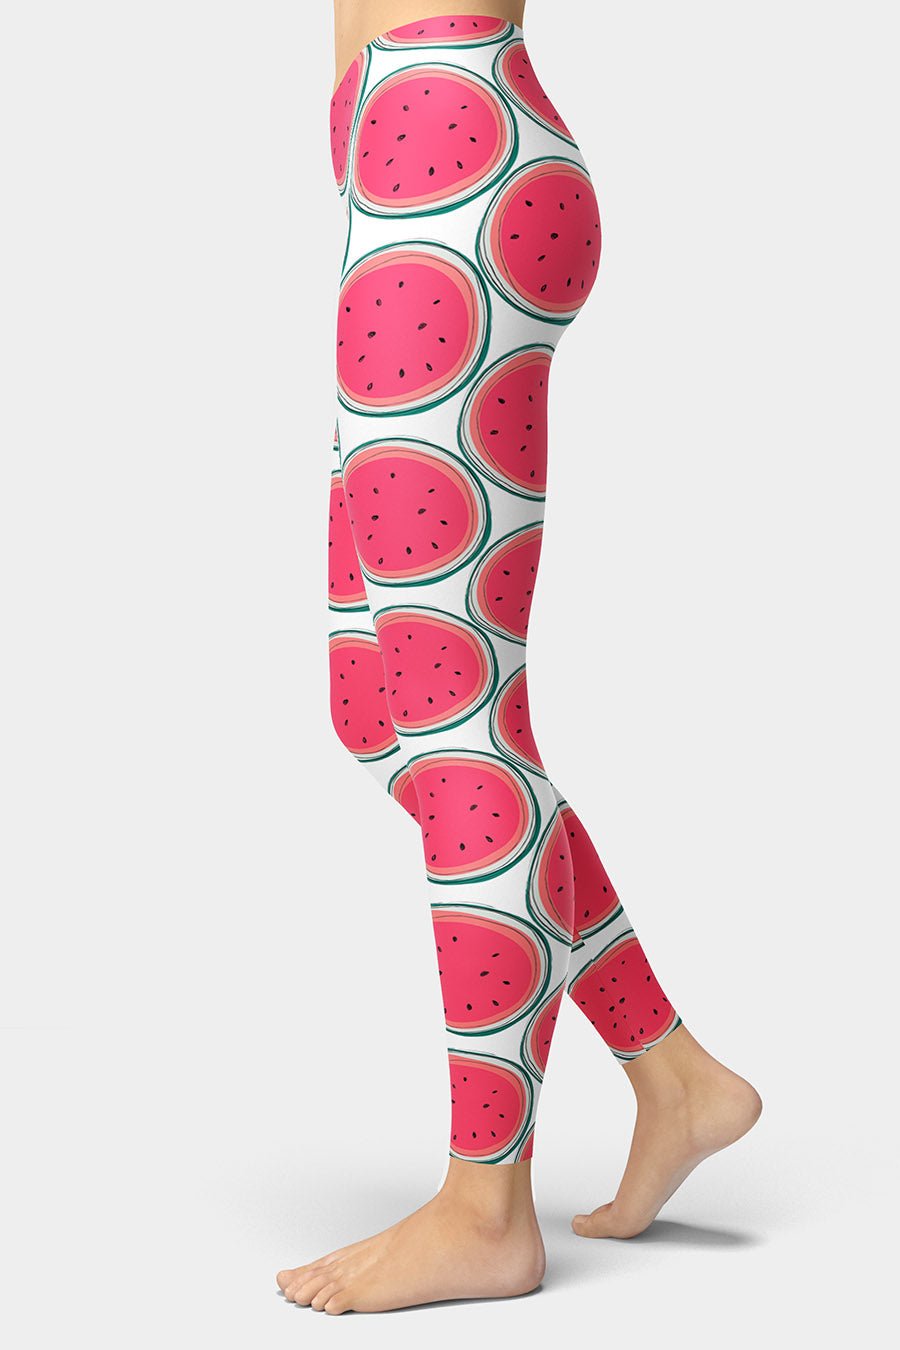 Watermelon Slices Leggings - SeeMyLeggings